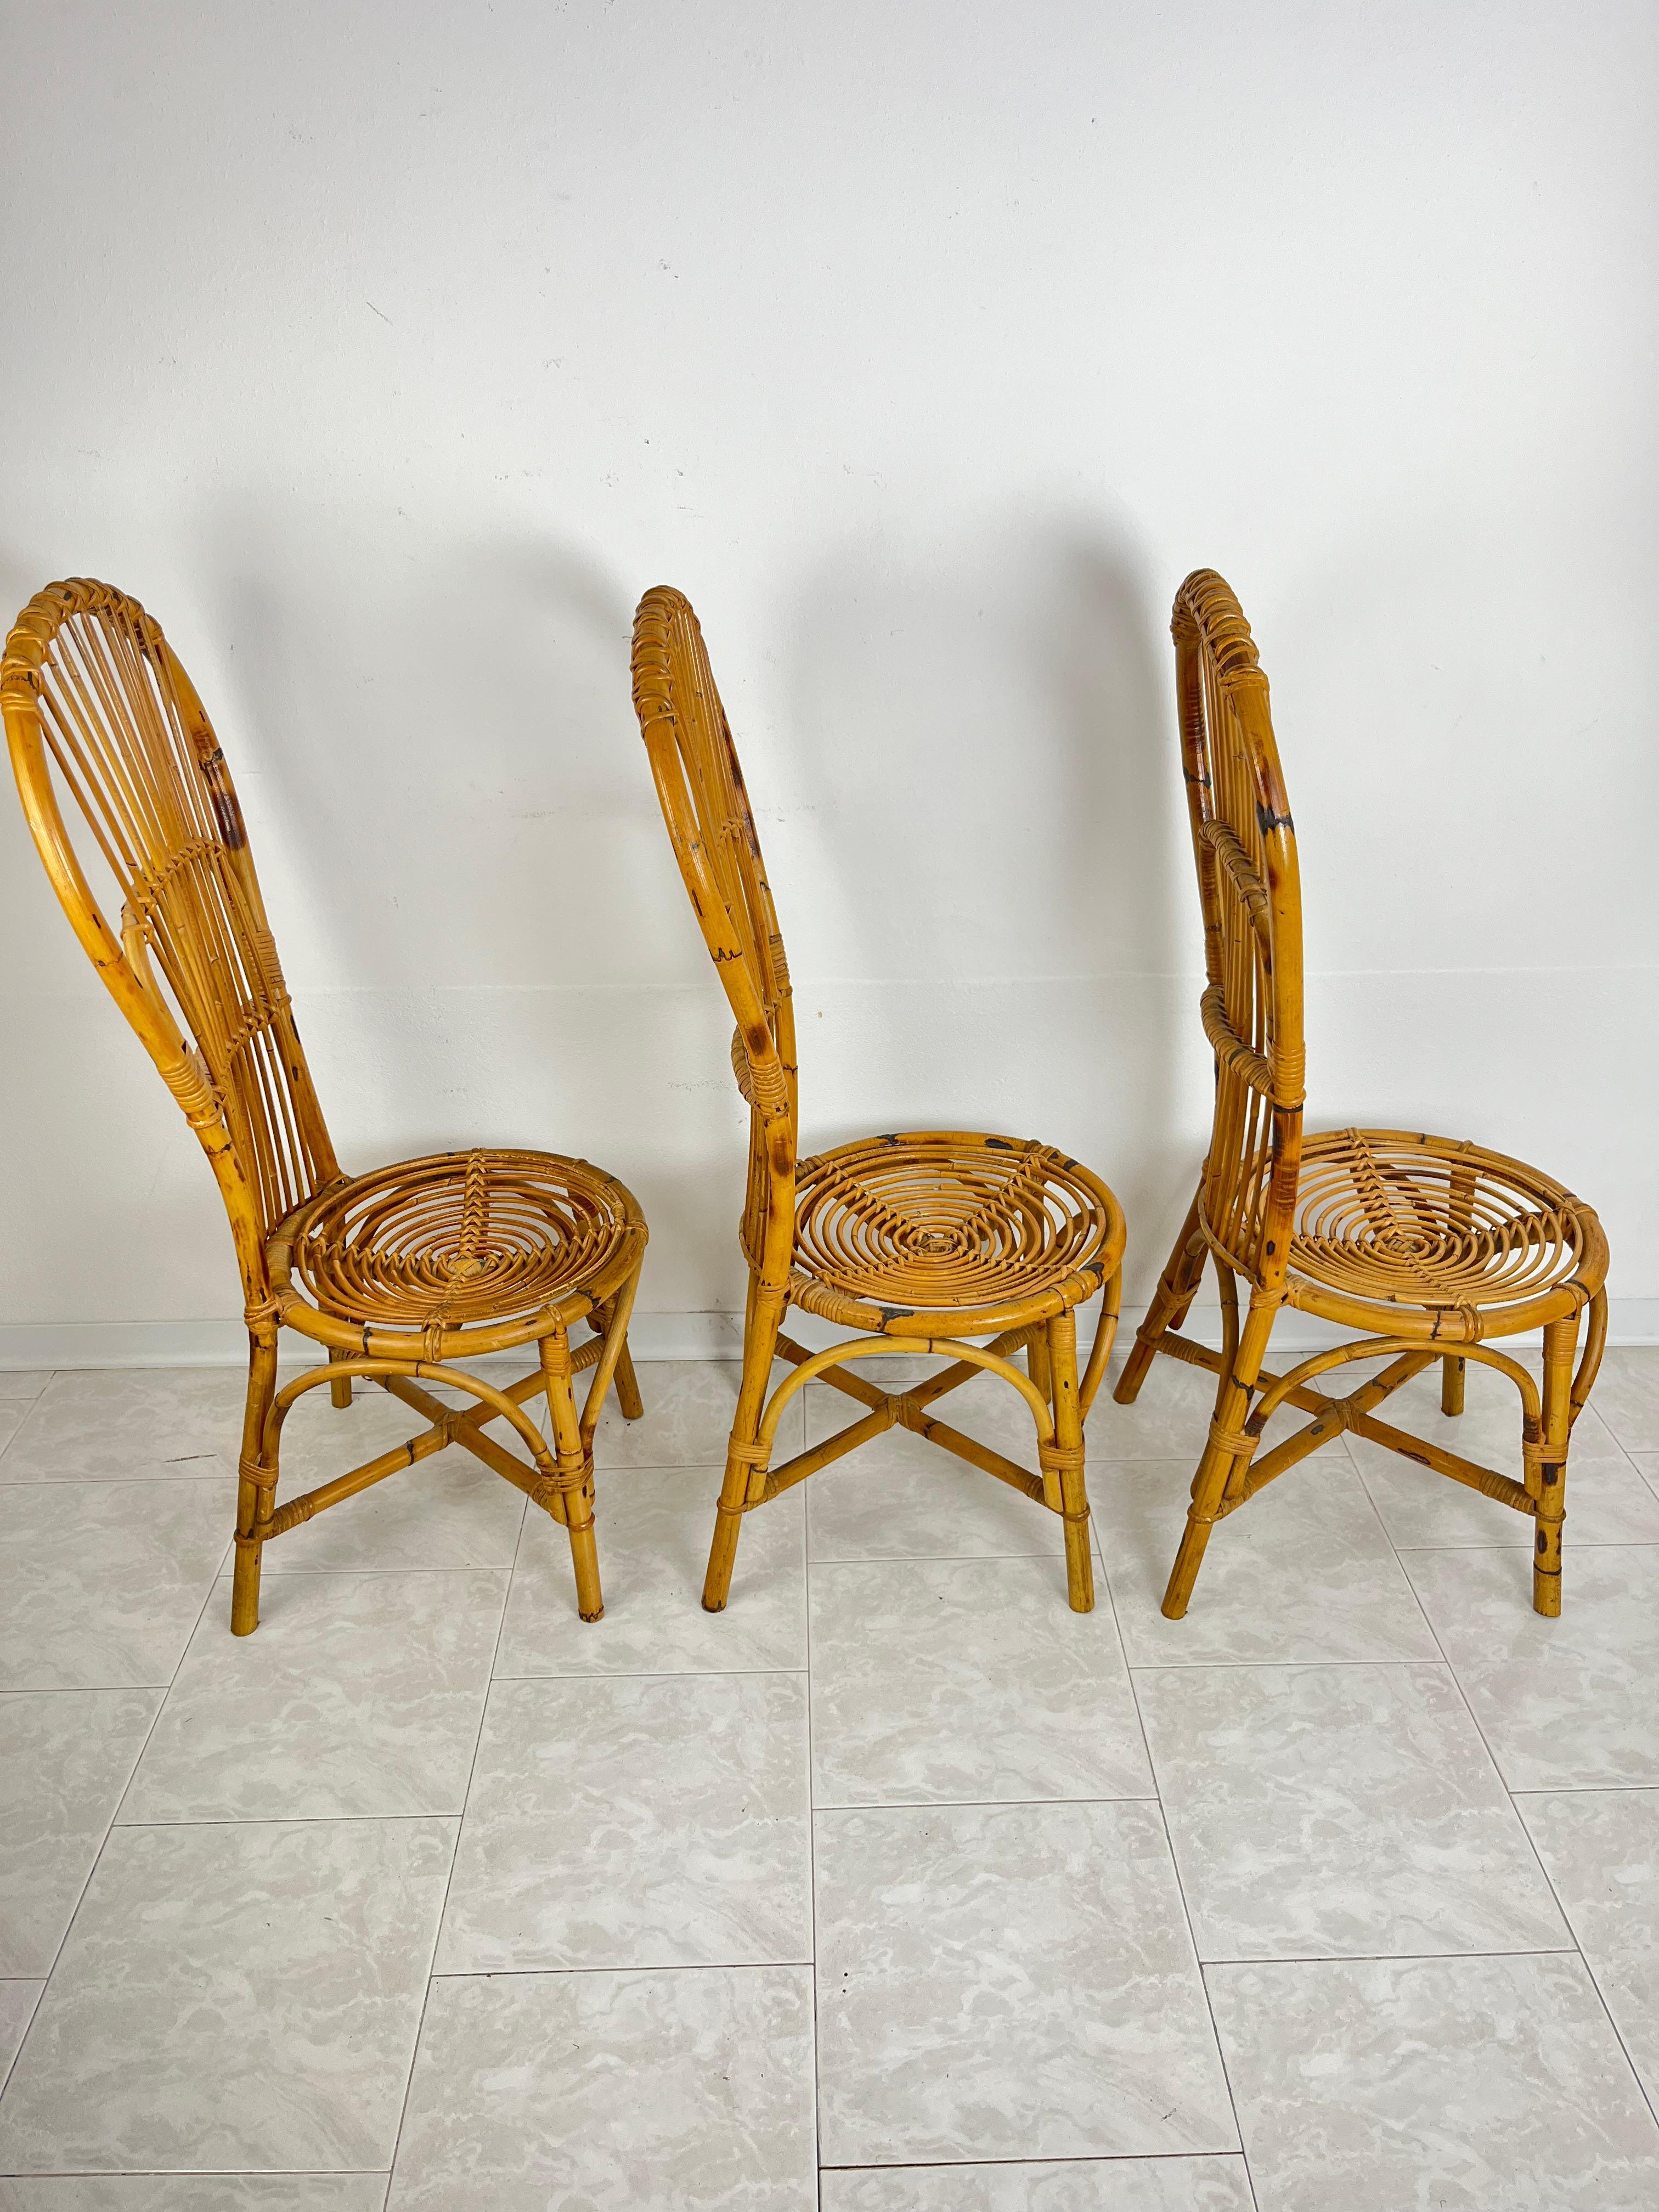 Lot de 3 chaises en bambou et rotin du milieu du siècle avec dossier en éventail Design italien  1950s
Intact et en bon état, petits signes de vieillissement.